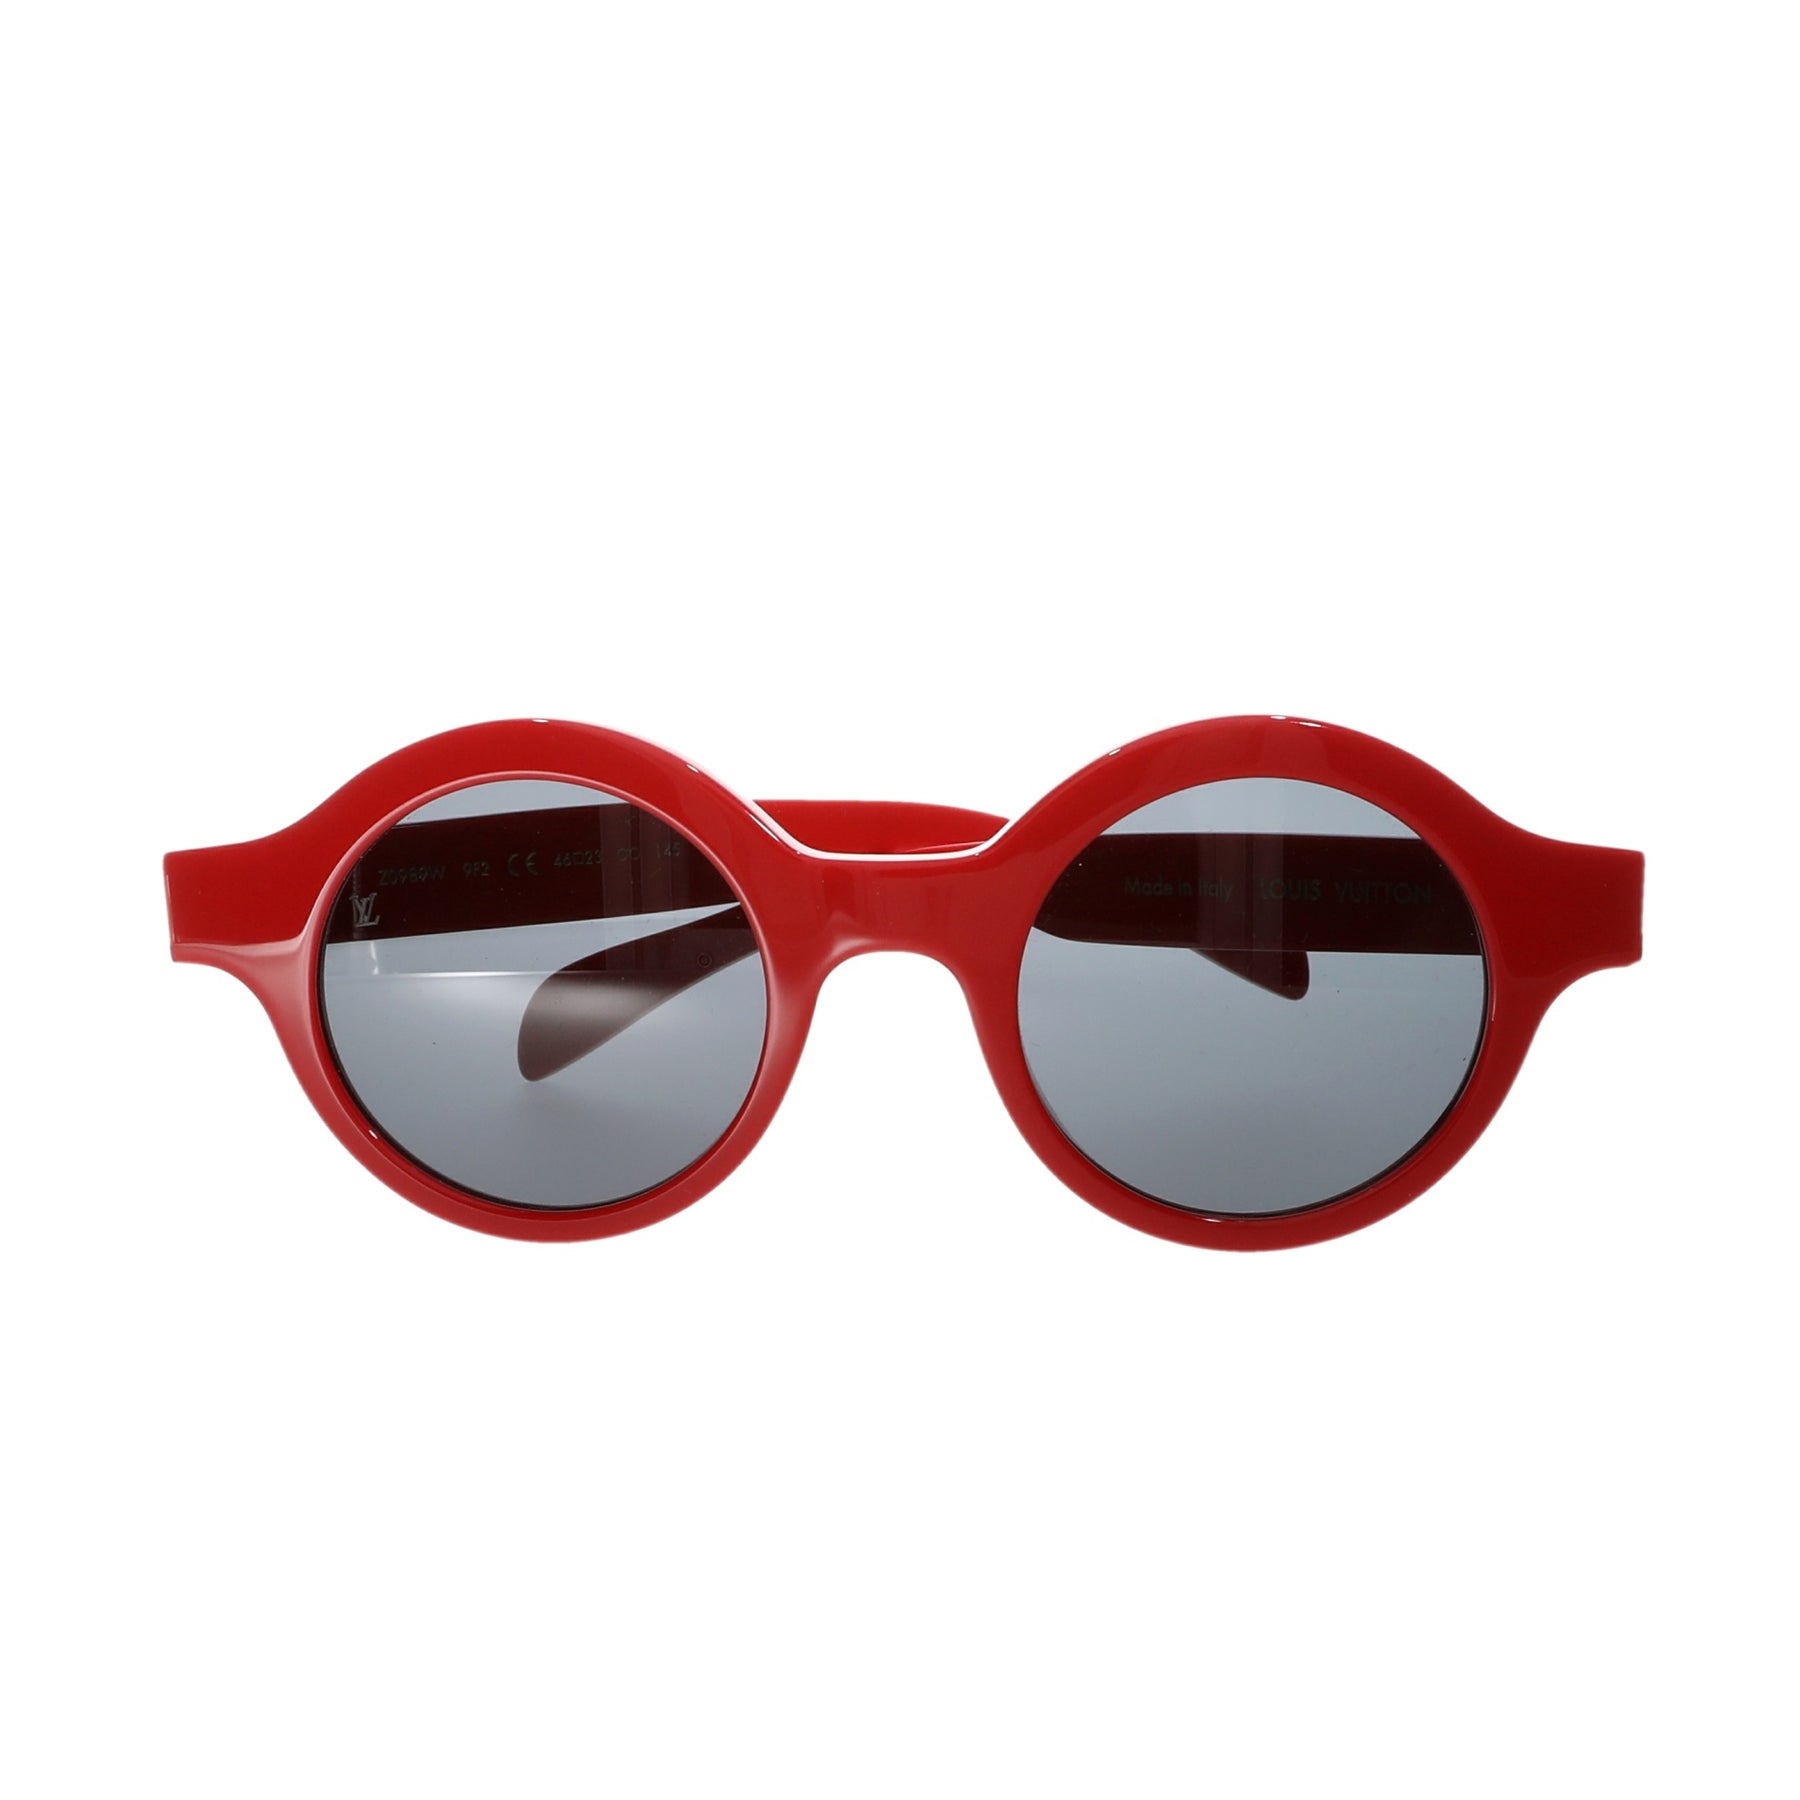 Supreme x Louis Vuitton Eyewear Mask Sunglasses Red